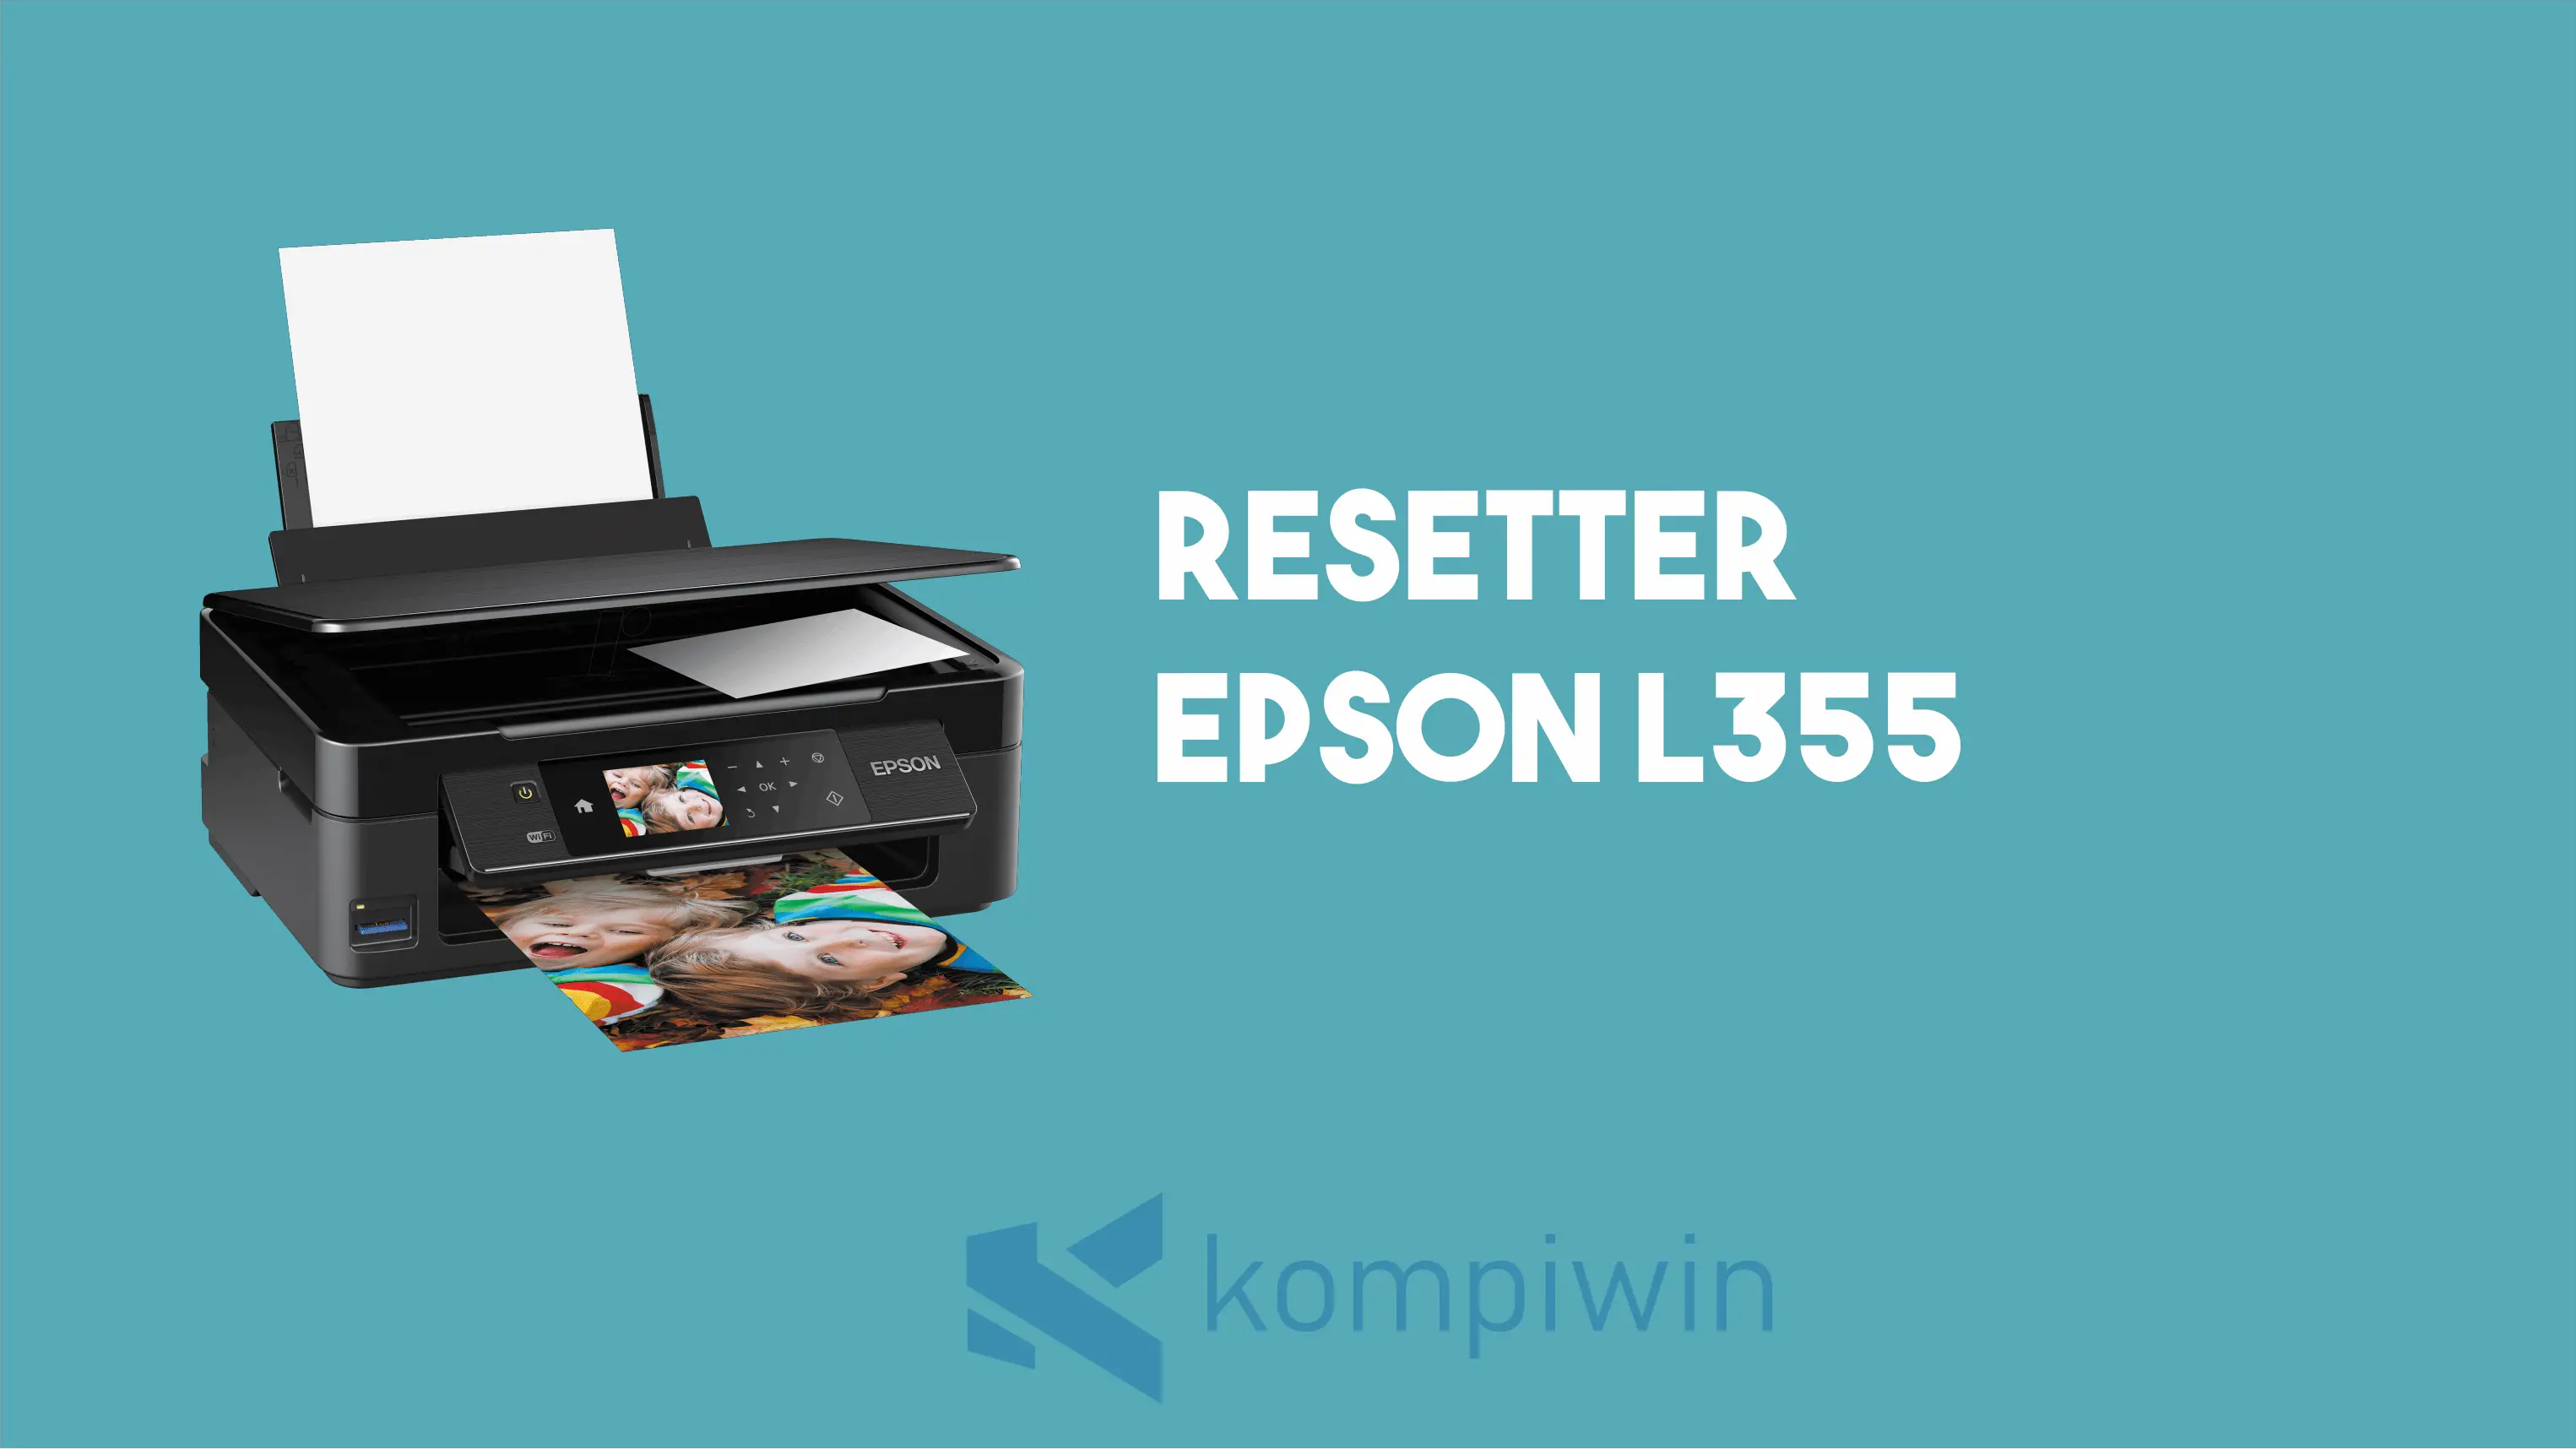 Resetter Epson L355